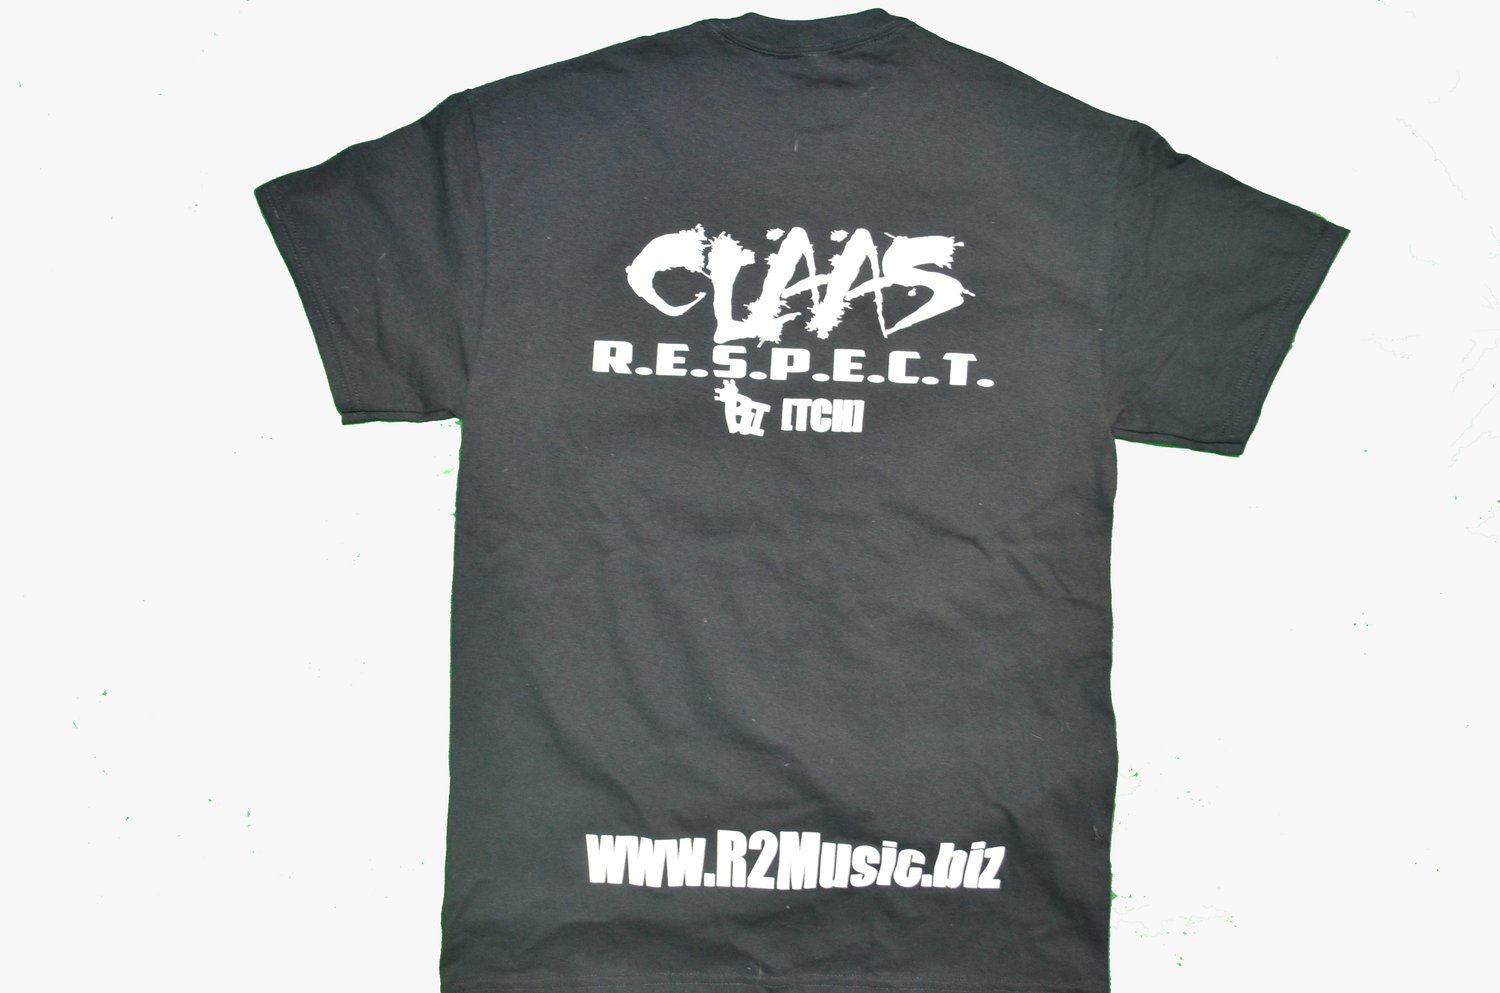 Image of Claas R.E.S.P.E.C.T. T-shirt